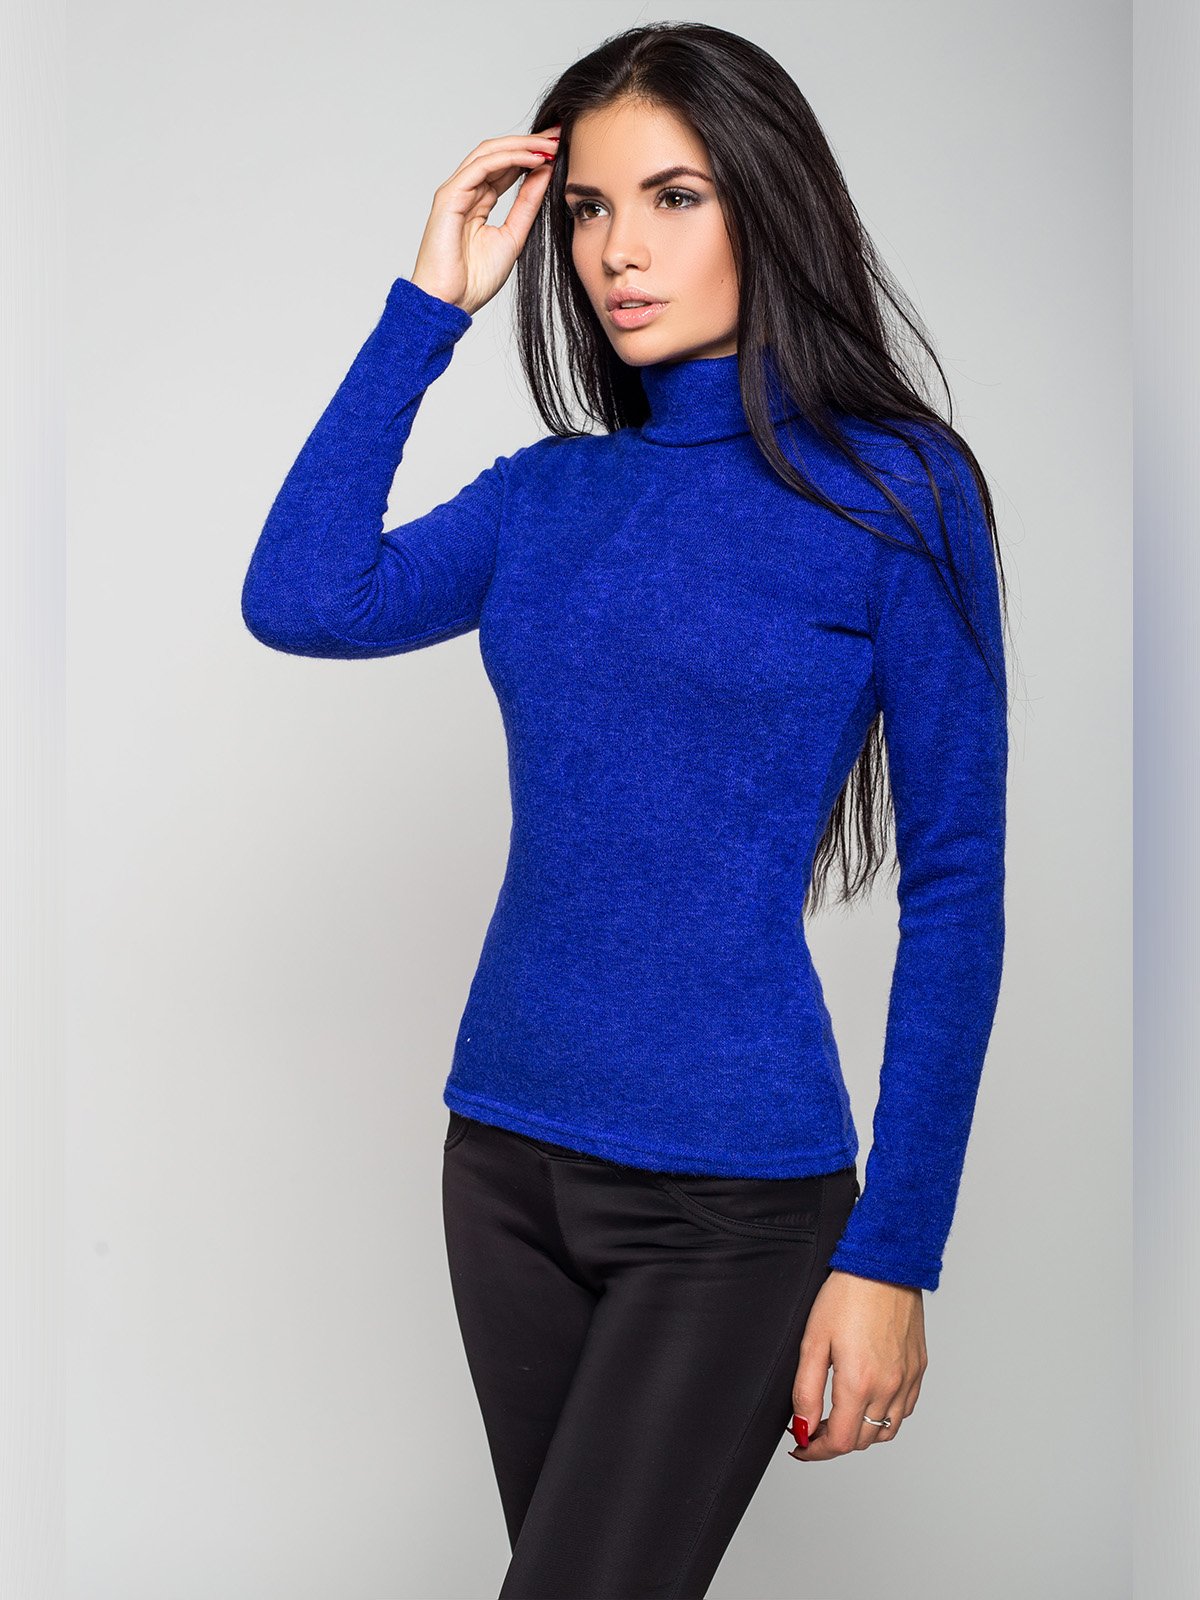 Ярко синий свитер женский с чем носить